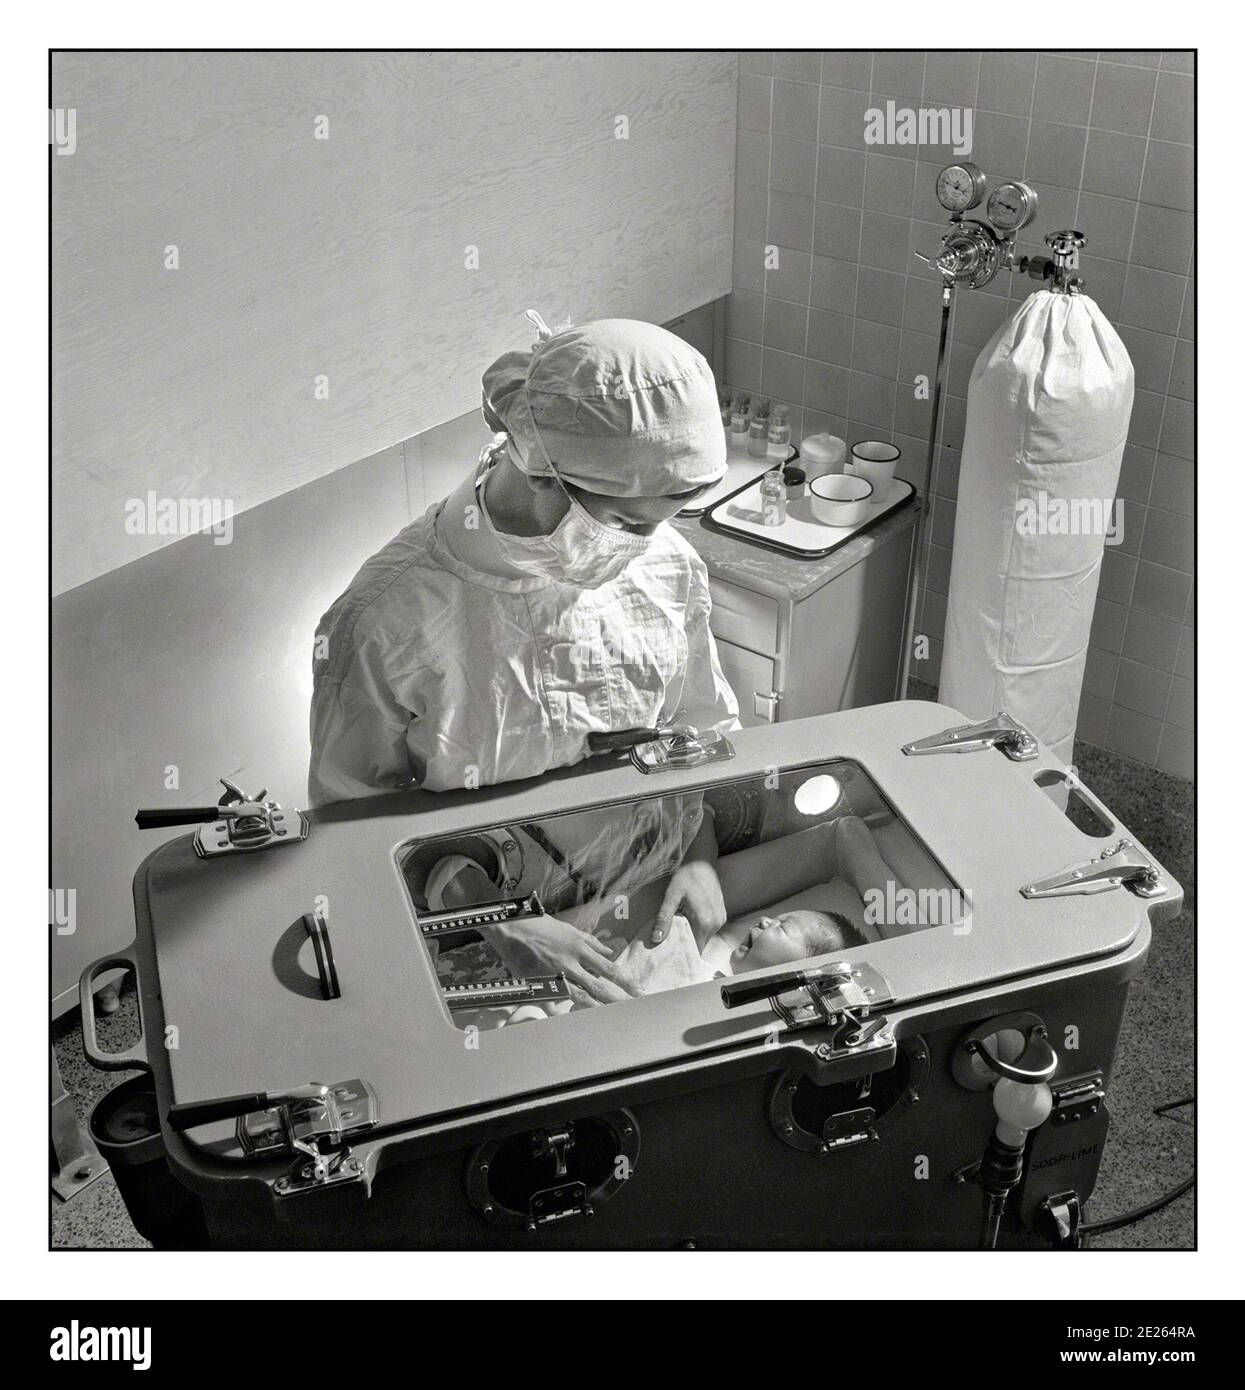 Incubateur Hôpital des années 1940 unité de naissance prématurée novembre 1942. New York. Les soins des bébés nés prématurément ont compliqué les procédures qui doivent être apprises par une infirmière étudiante. L'alimentation, le bain, etc. Sont effectués à l'intérieur de l'incubateur, dans lequel la température, l'humidité et l'oxygène doivent être soigneusement régulés avec l'alimentation du réservoir d'oxygène en arrière-plan. » Une unité de soins intensifs néonatals, également connue sous le nom de pépinière de soins intensifs, est une unité de soins intensifs spécialisée dans les soins aux nouveau-nés malades ou prématurés. Banque D'Images